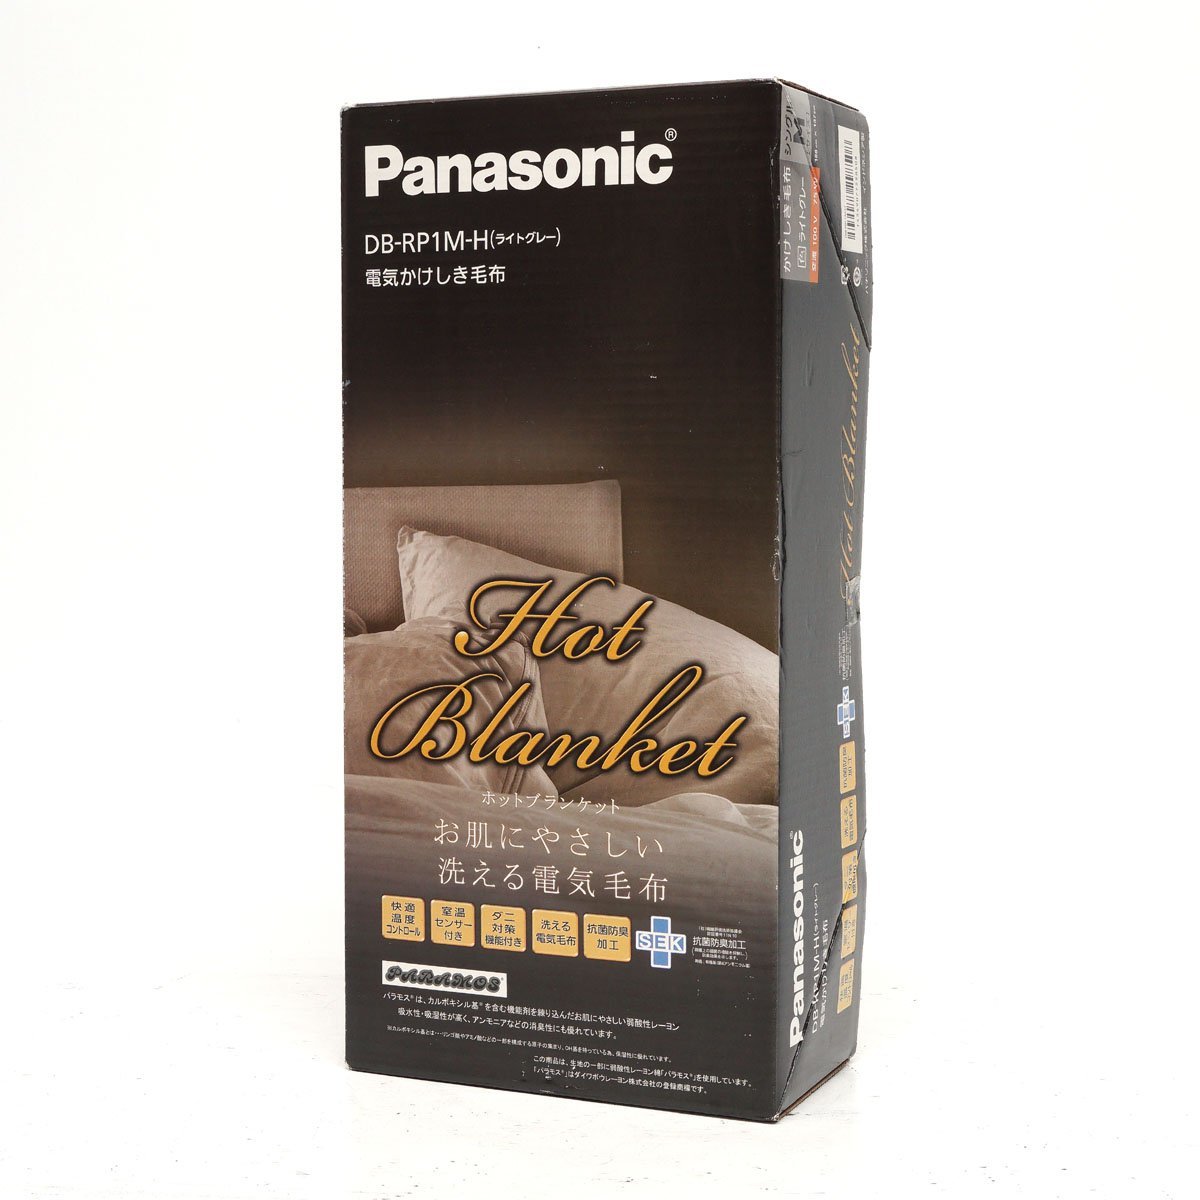 【未使用】Panasonic 電気かけしき毛布 DB-RP1M シングル Mサイズ(188cmx137cm) ライトグレー ホットブランケット [H800478]_画像1